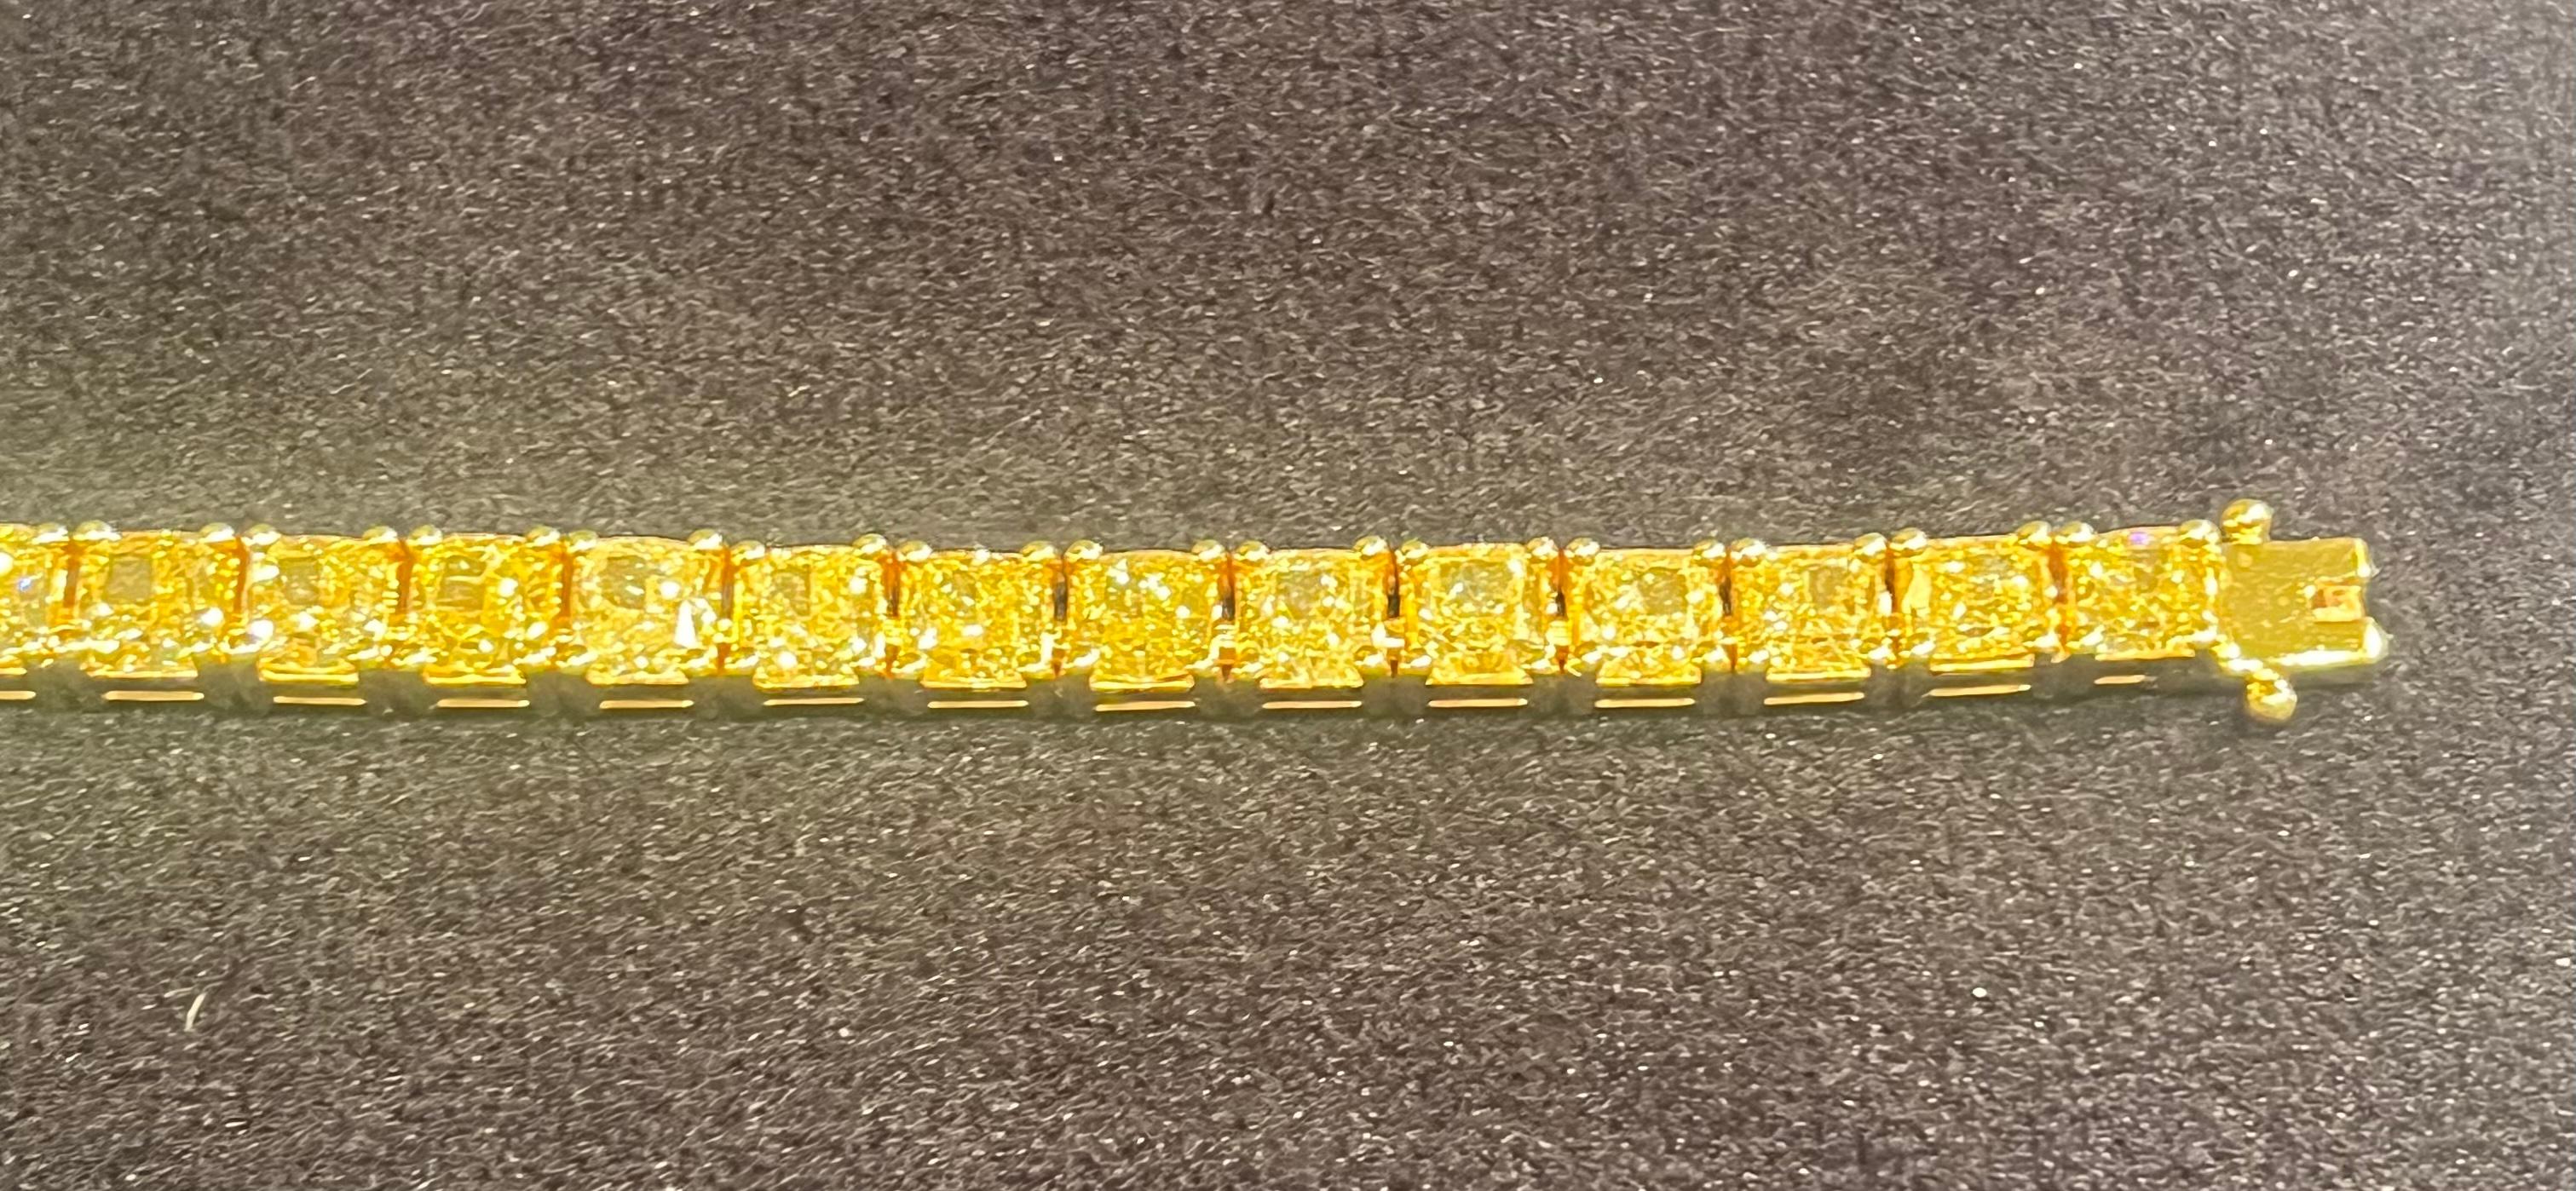 Ravishing 19.57 Carat Fancy Yellow Diamond 18k Yellow Gold Tennis Bracelet  1